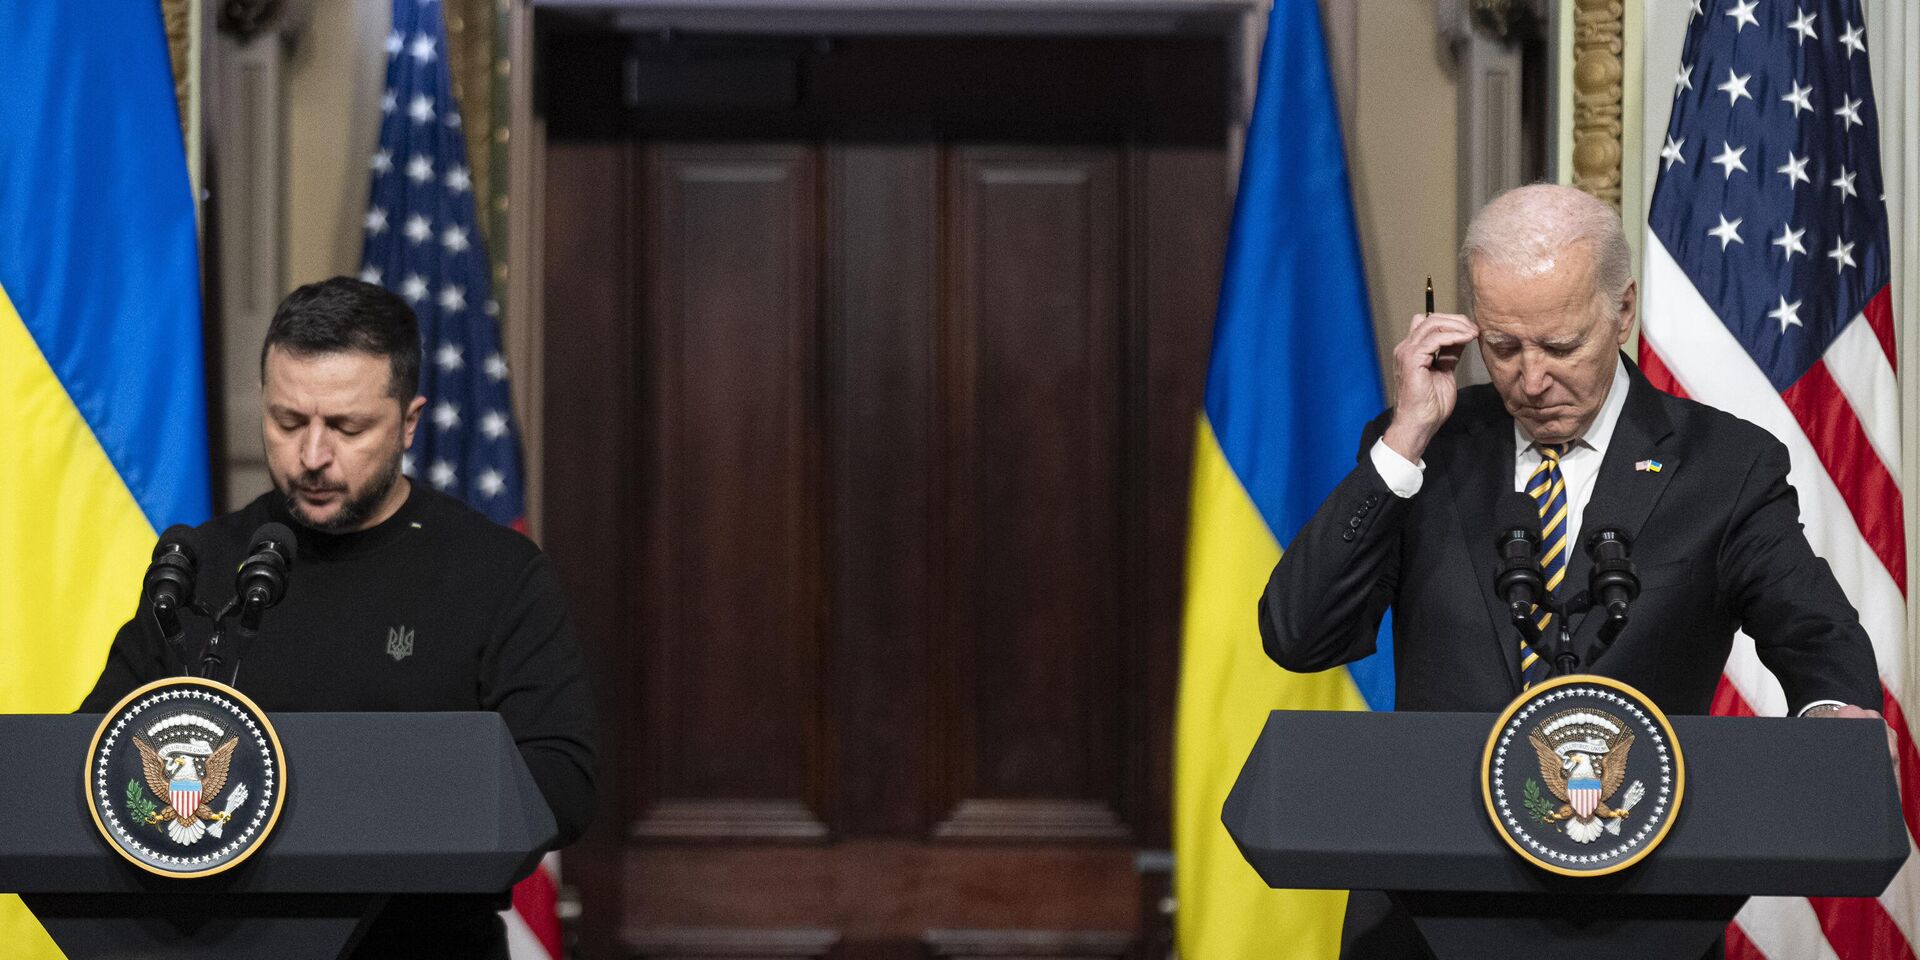 Президент Украины Владимир Зеленский и президент США Джо Байден во время пресс-конференции в Белом доме в Вашингтоне 12 декабря 2023 года - ИноСМИ, 1920, 29.01.2024